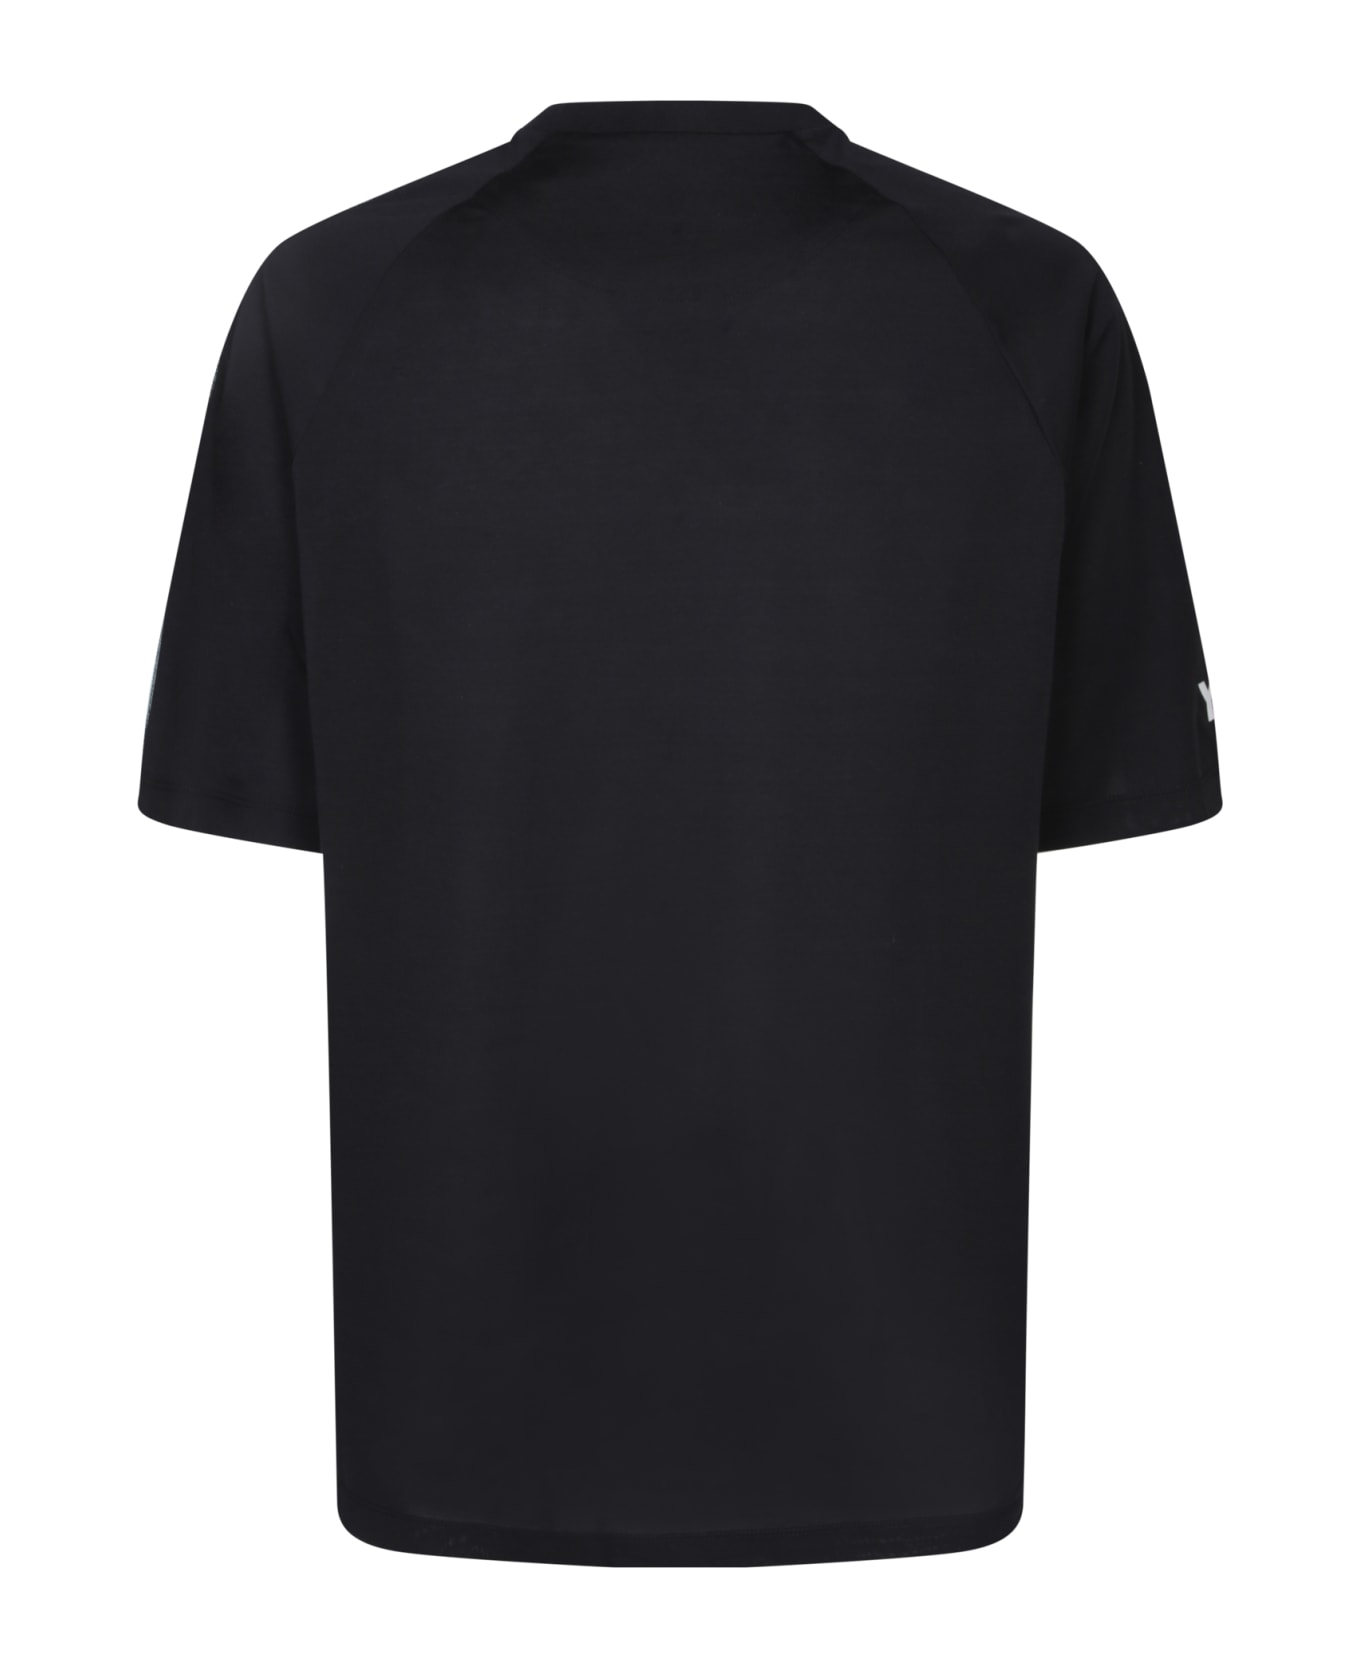 Y-3 Adidas Y-3 3s Black T-shirt - Black